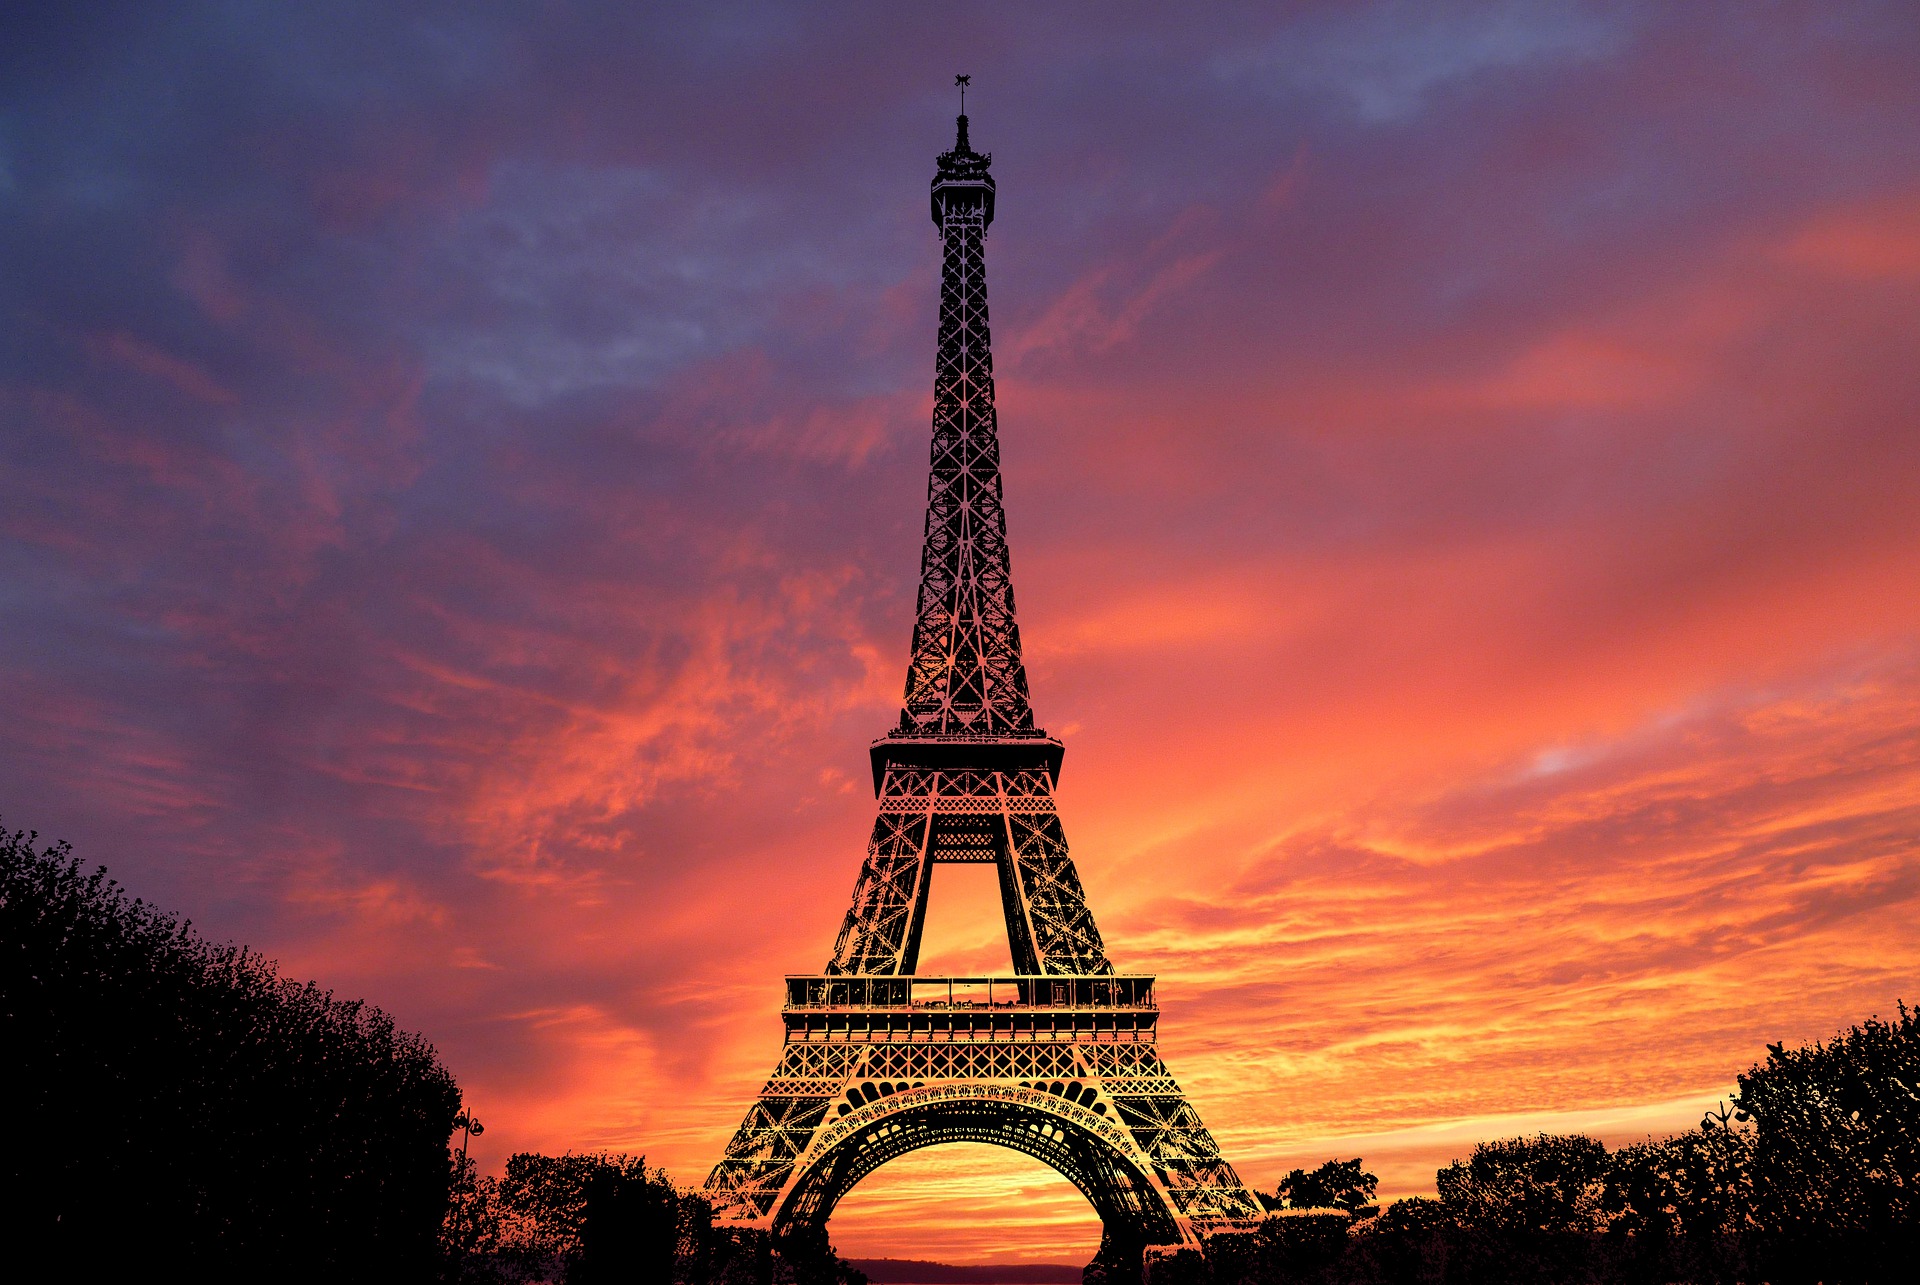 Eiffel Tower Restaurants